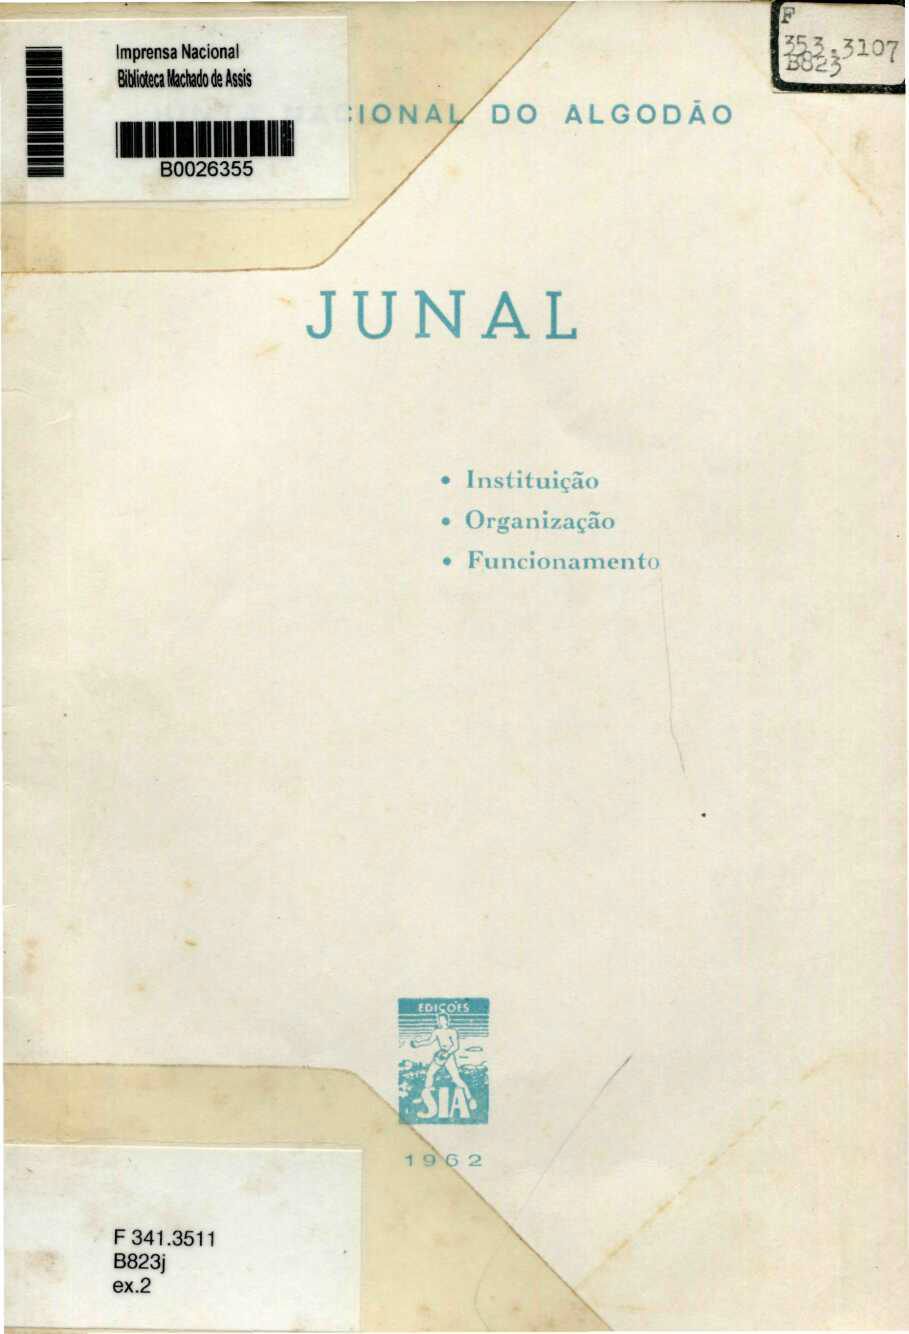 Capa do Livro Junta Nacional do Algodão (JUNAL)